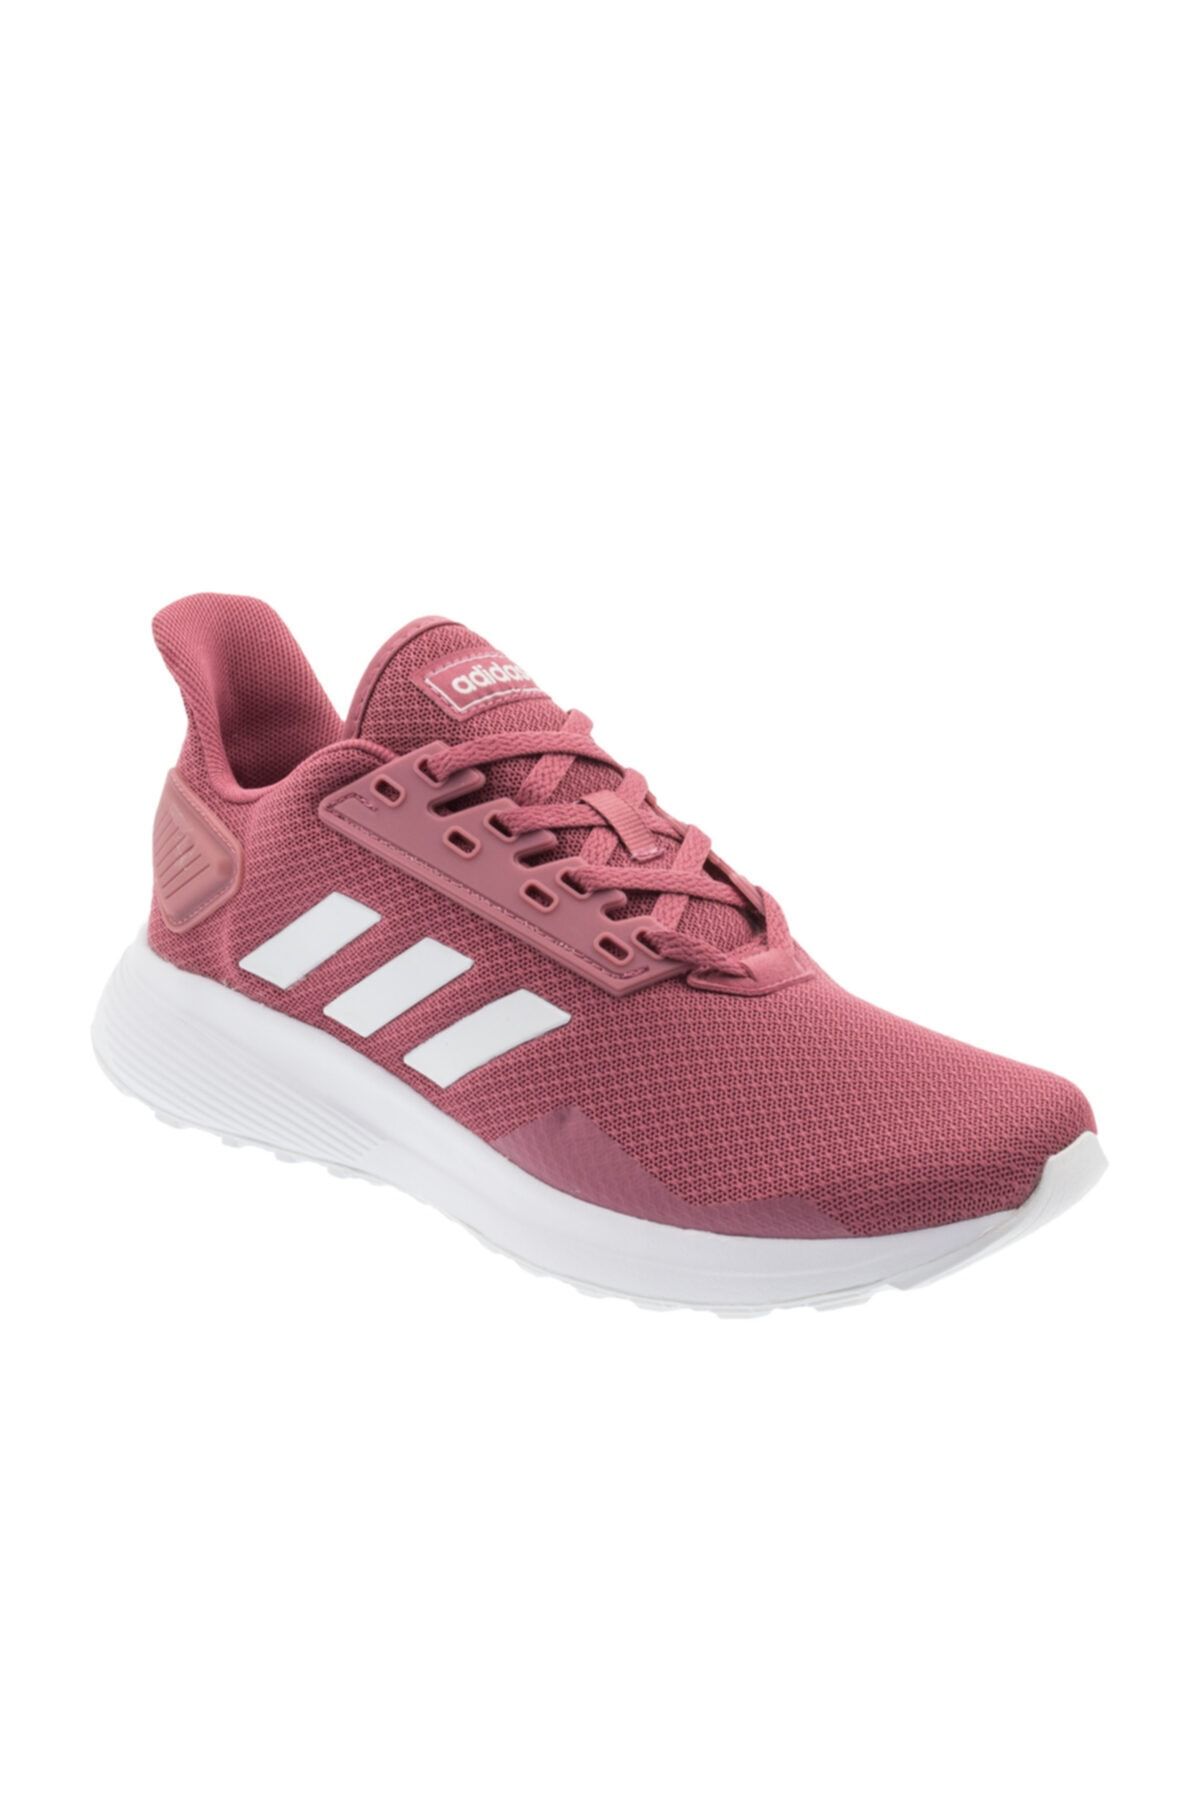 adidas Duramo 9 Kadın Pembe Koşu Ayakkabısı (bb7069)